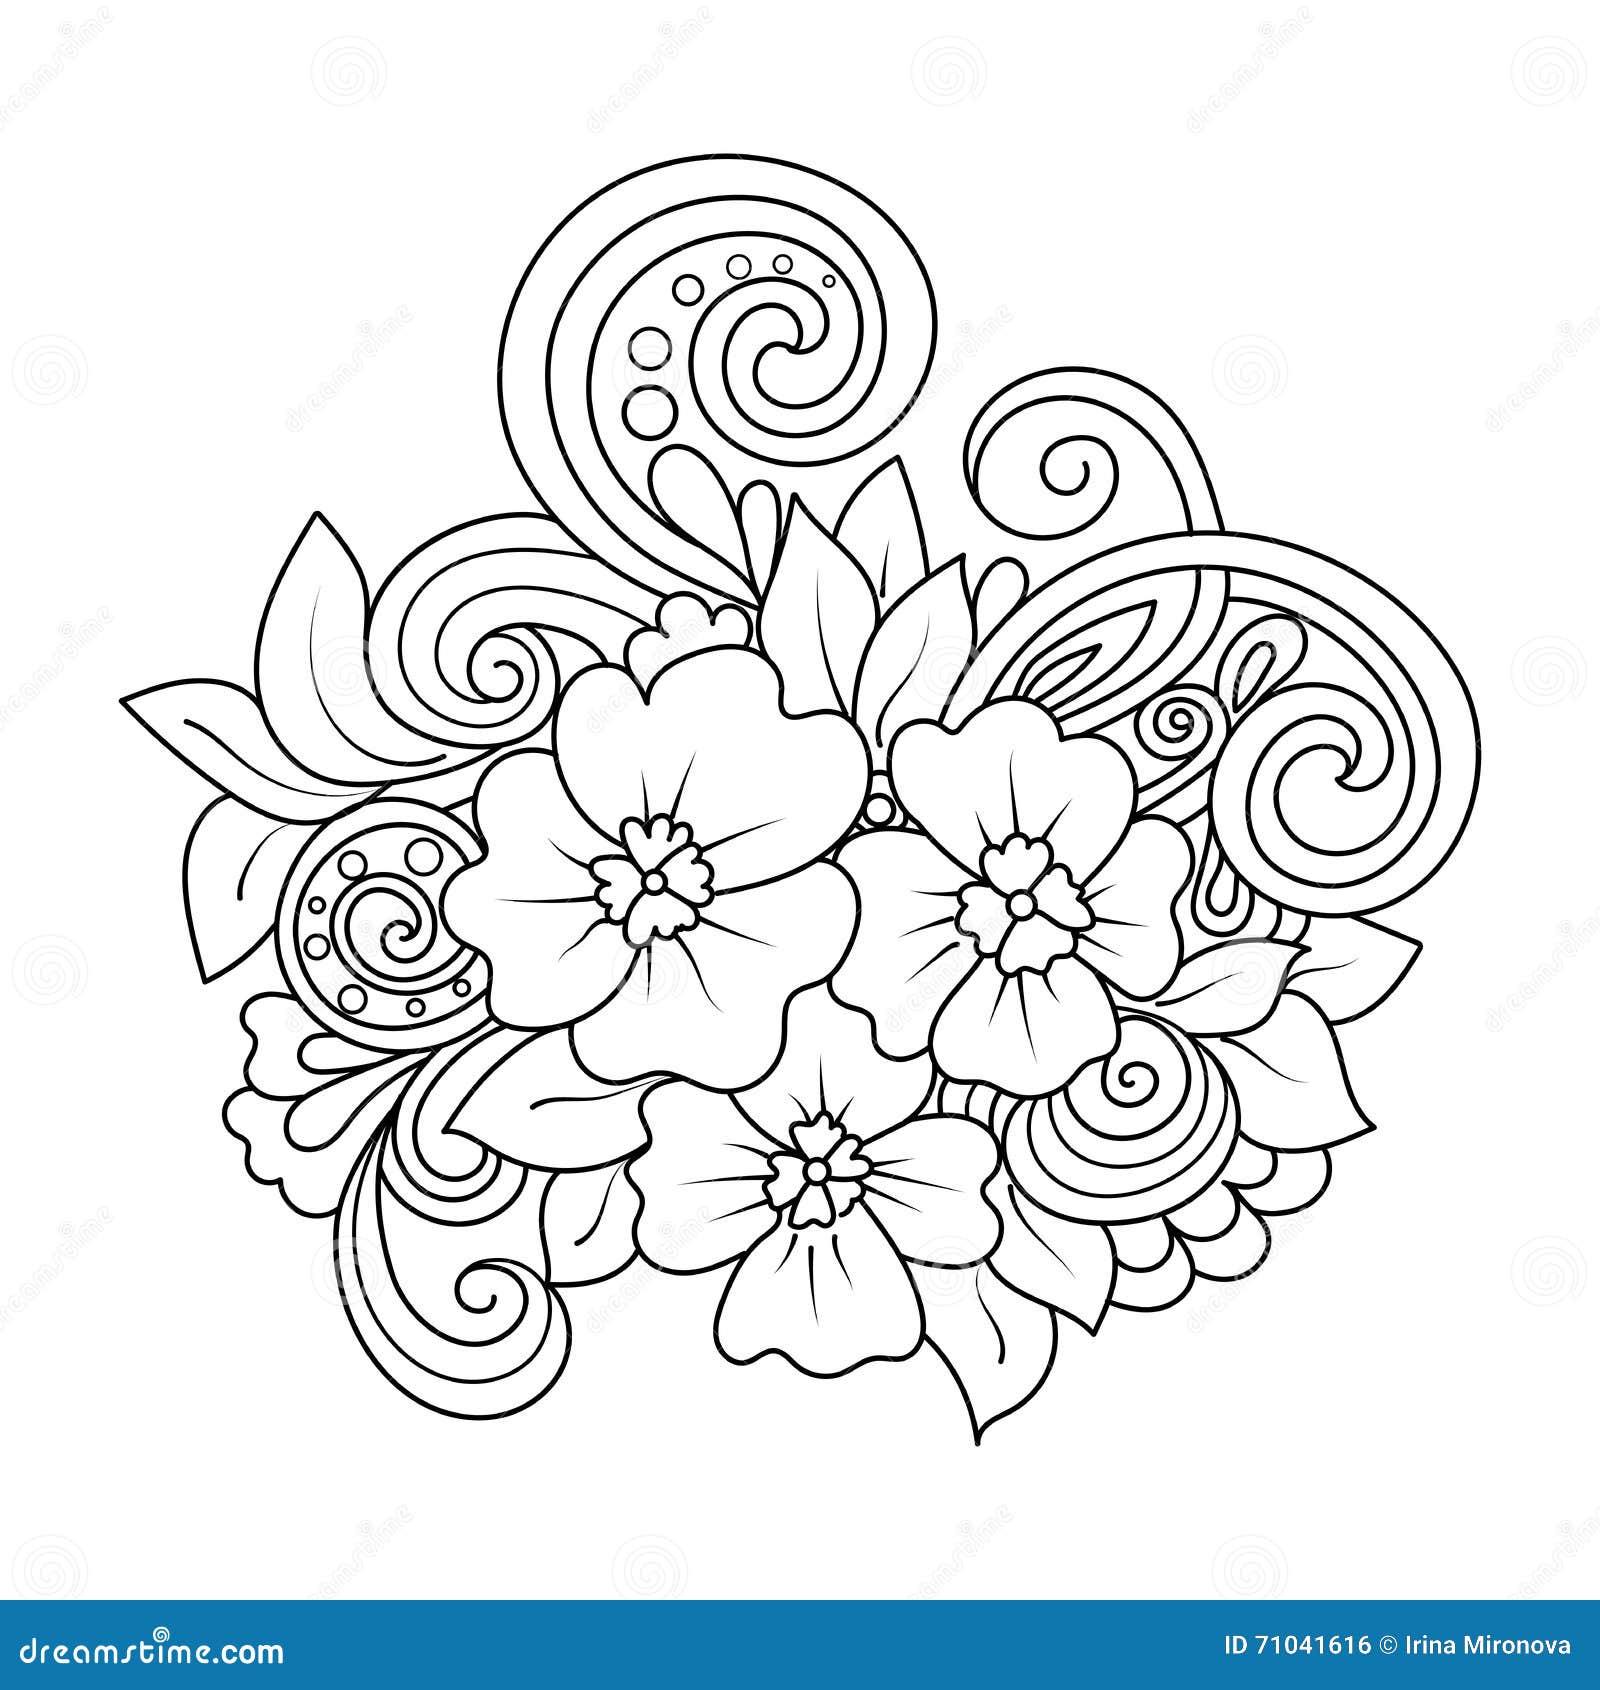 Doodle art flowers. stock vector. Illustration of leaf - 71041616